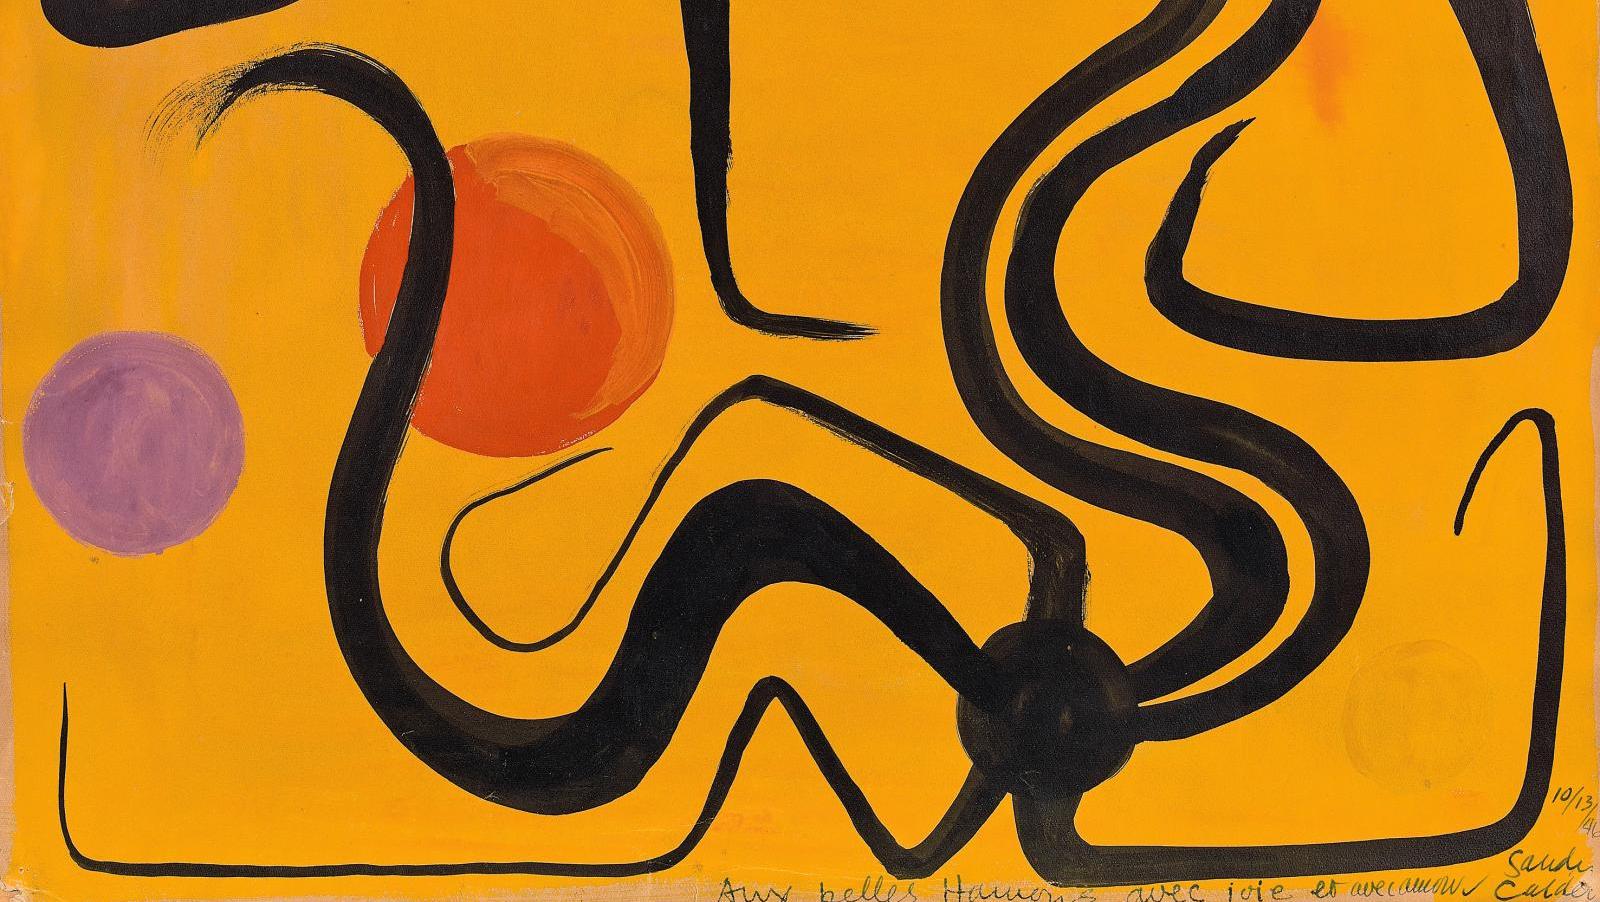 Alexander Calder (1898-1976), Aux Belles Hamons avec joie et amour,encre de Chine... Calder, l’abstraction pour univers